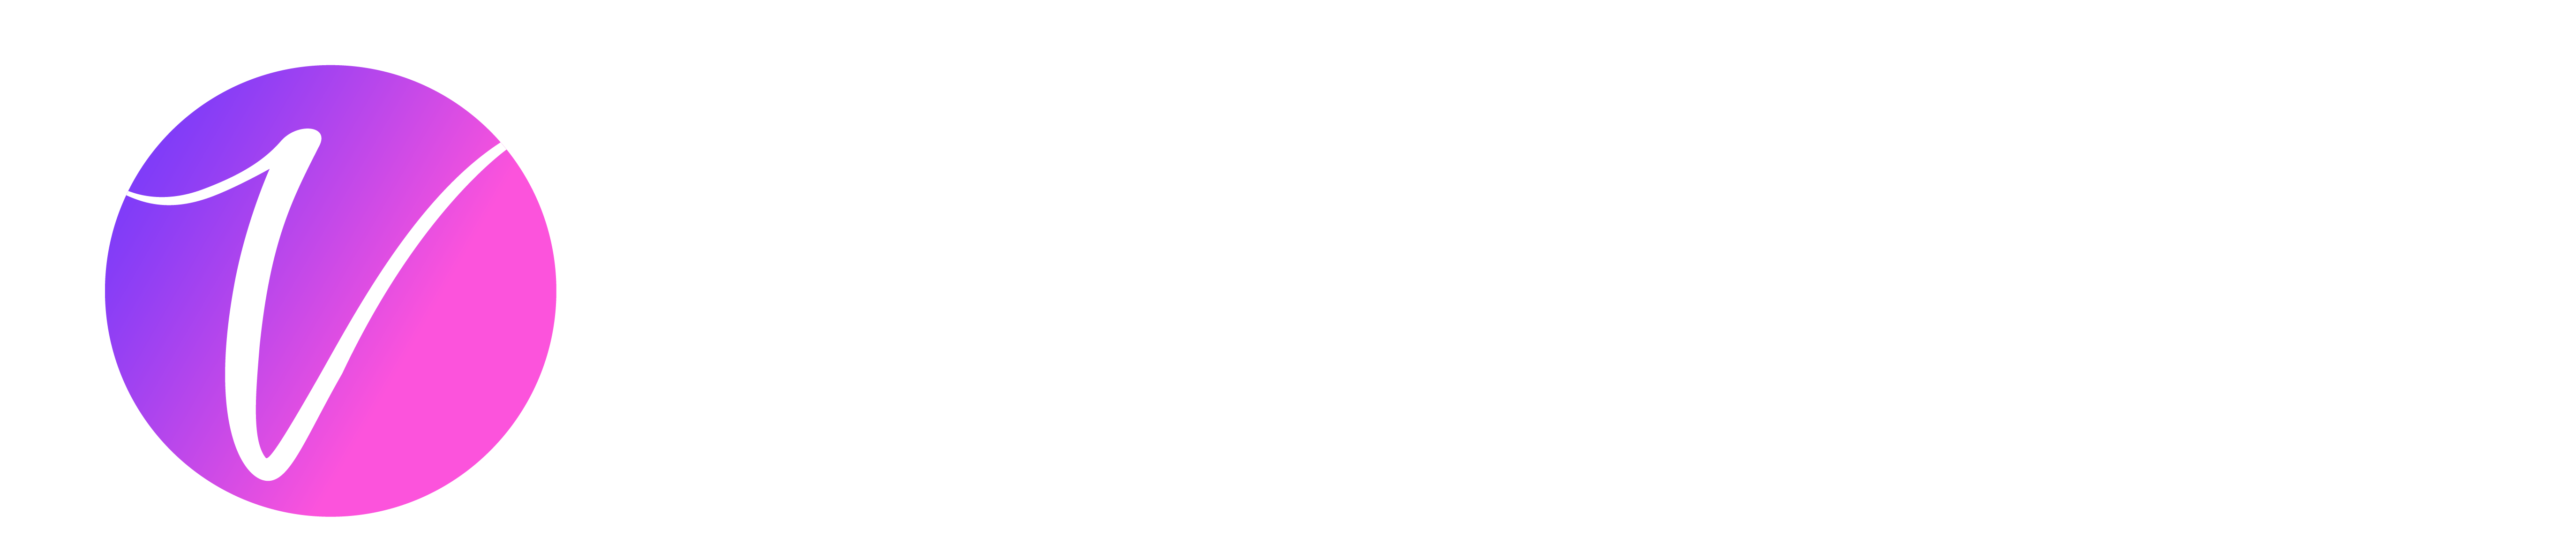 VeilBook logo v.3_Veilbook Logo V.2 Colored copy